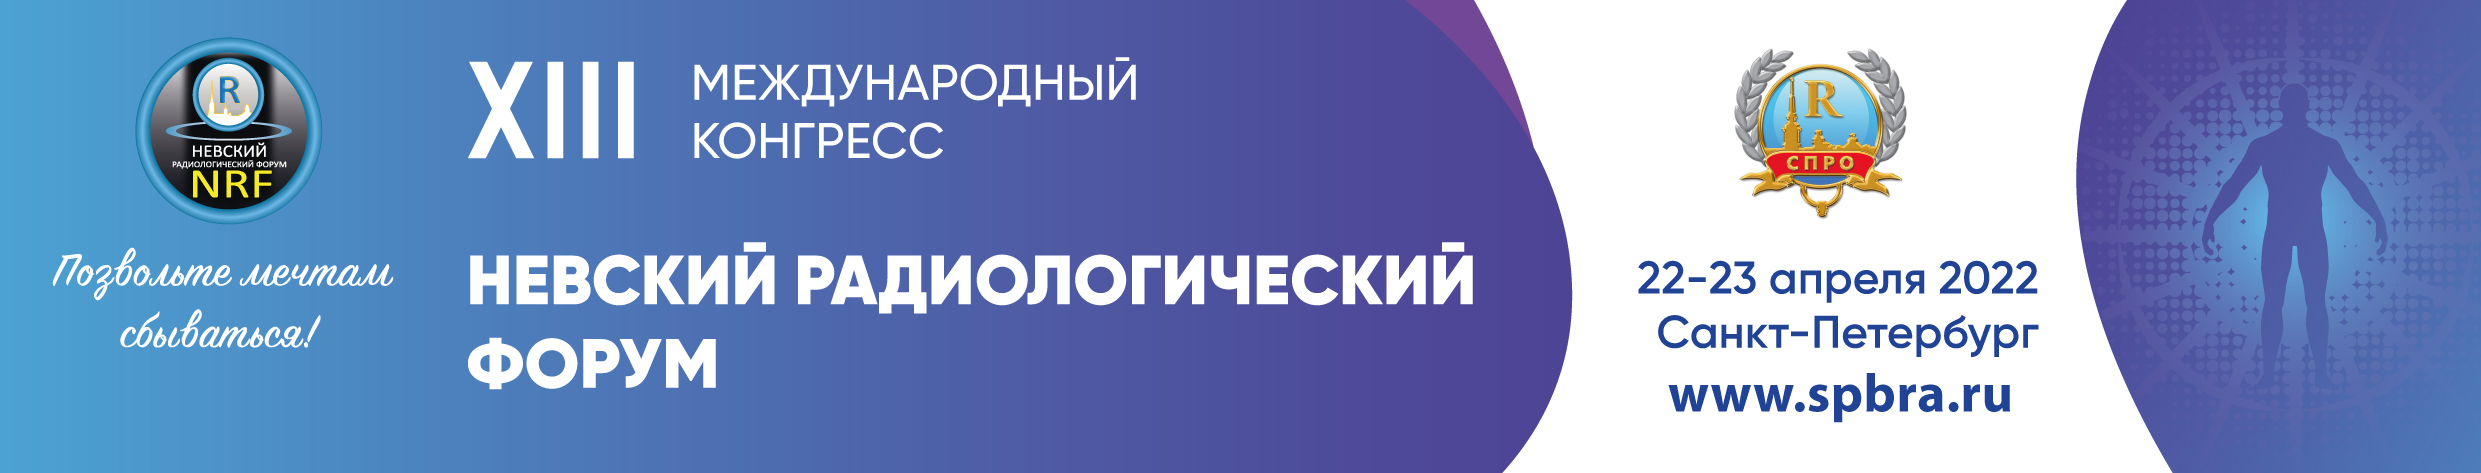 ХIII Международный конгресс "Невский радиологический форум-2022"